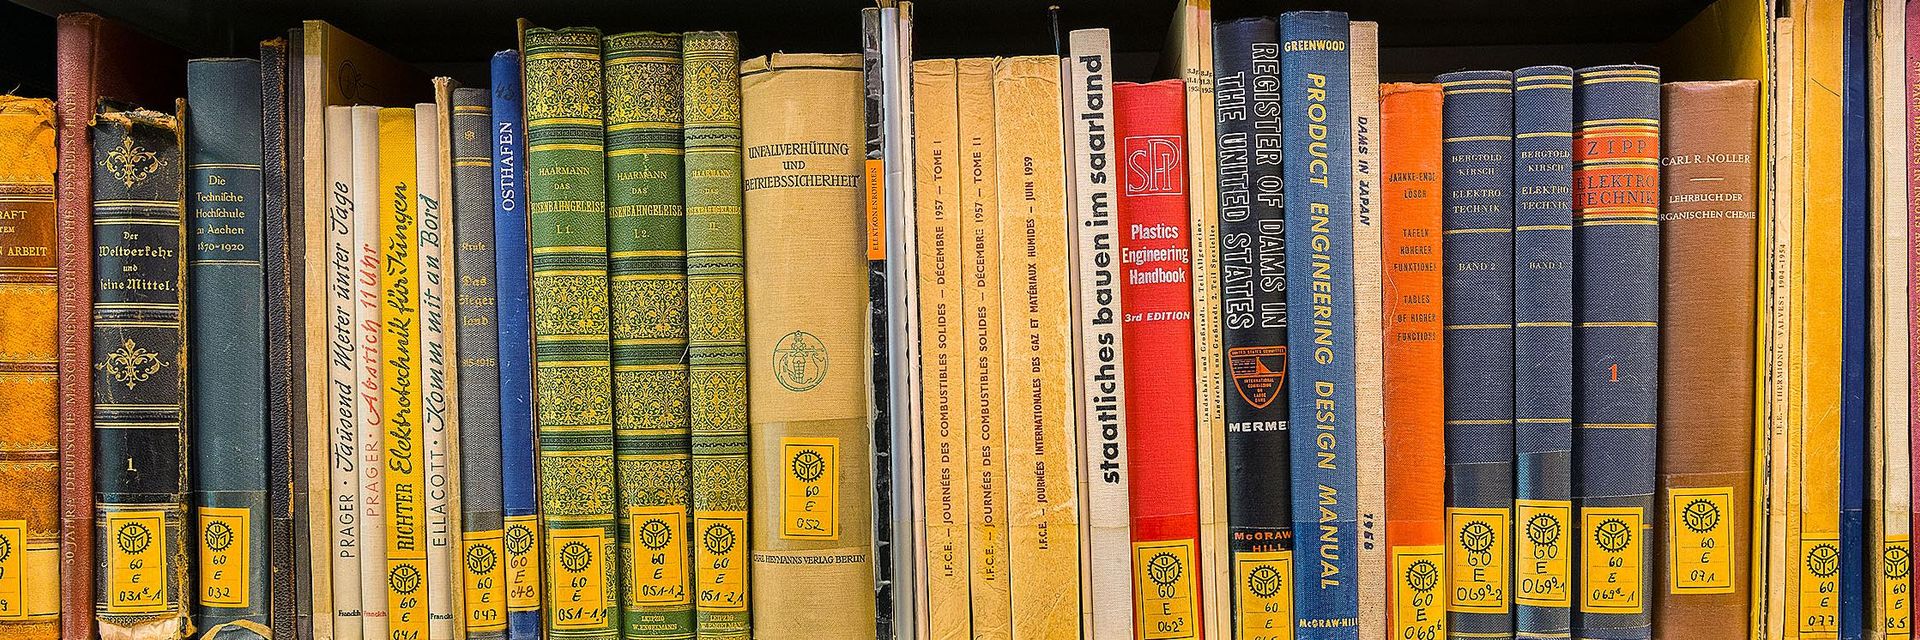 Blick in ein Regal, in dem bunte Buchrücken zu sehen sind, die mit gelben Signaturen ausgestattet sind.